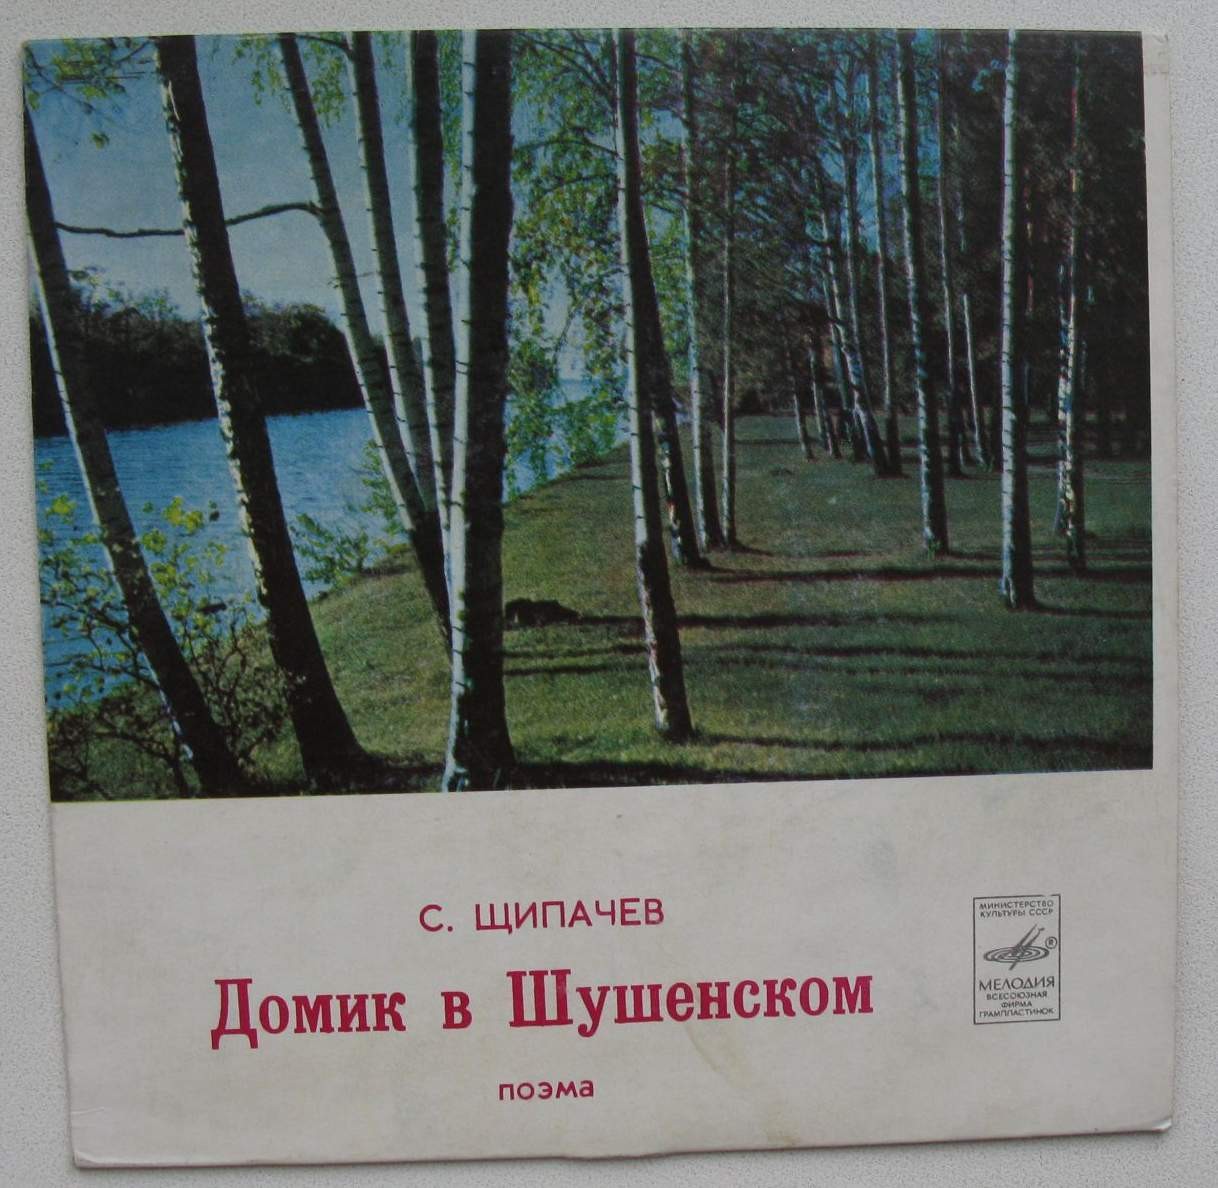 С. ЩИПАЧЕВ (1899-1980): Домик в Шушенском, поэма. Читает Я. Смоленский